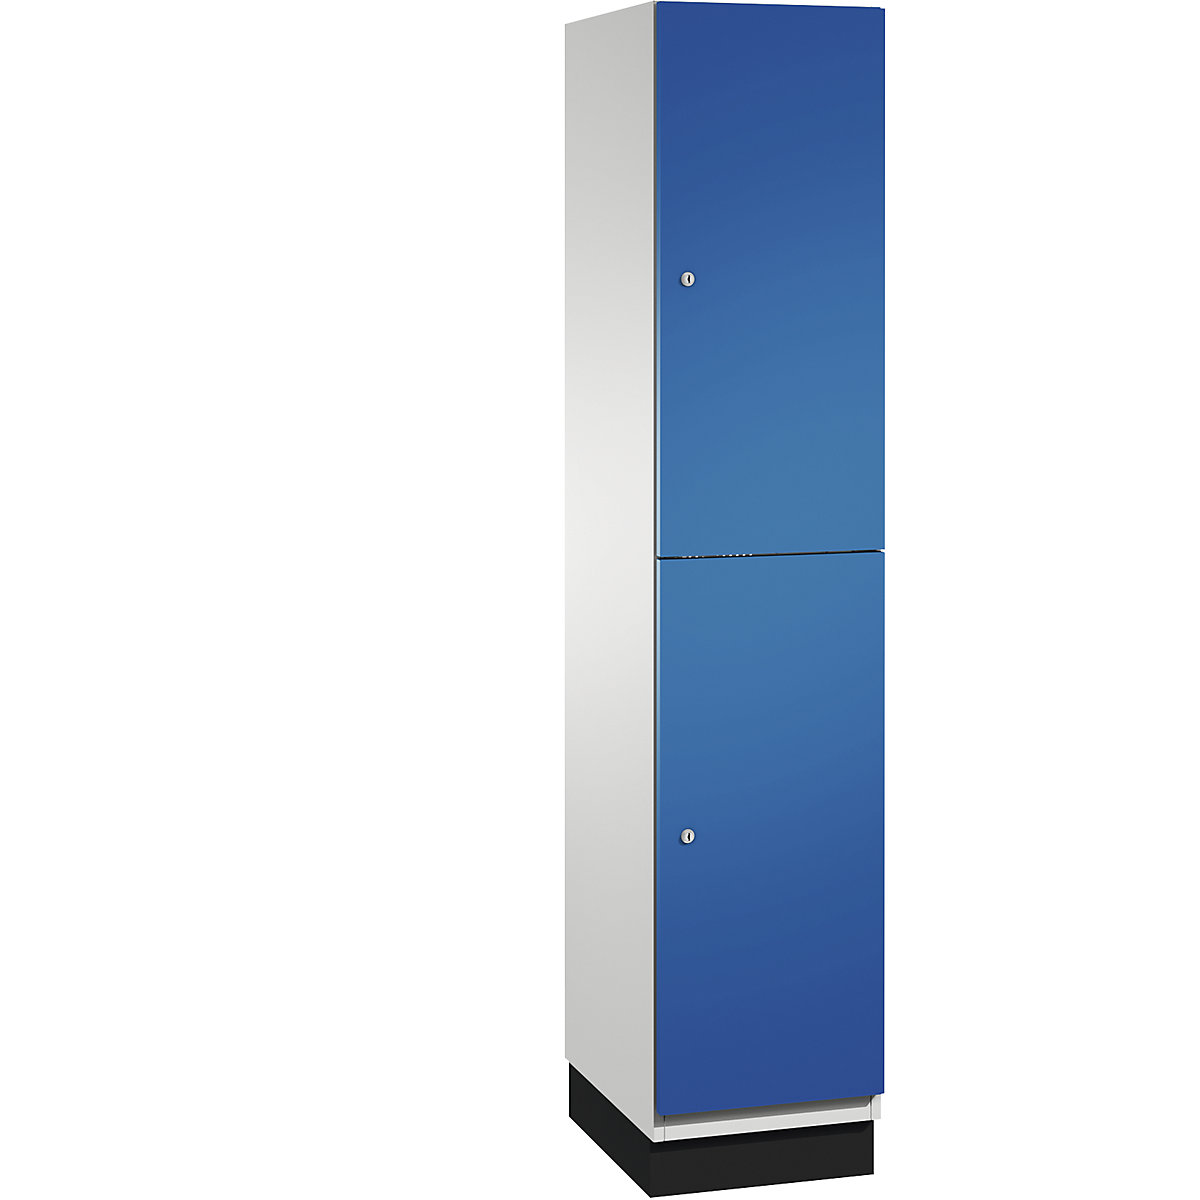 C+P – Skříň s boxy CAMBIO s tyčí na oděvy, 2 boxy, korpus světlý šedý / dveře hořcově modré, šířka 400 mm